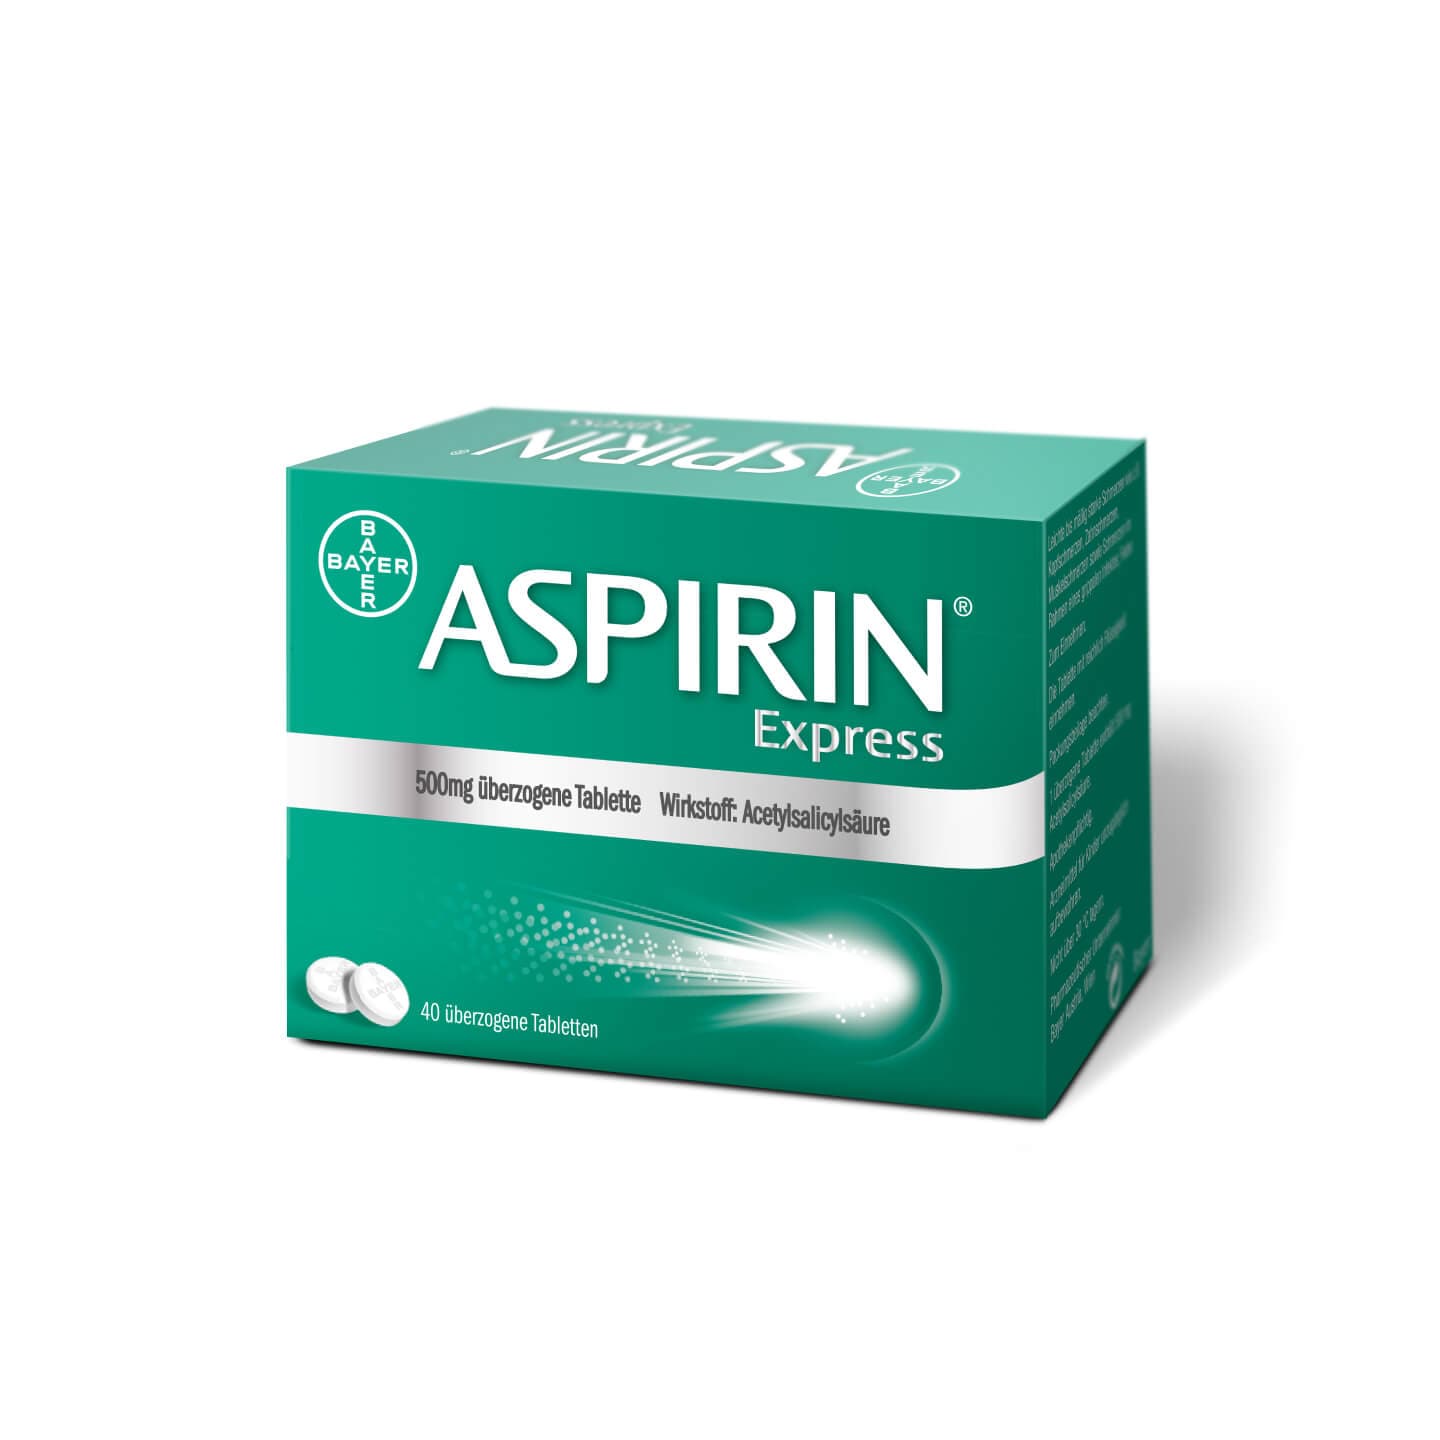 Aspirin® Express 40